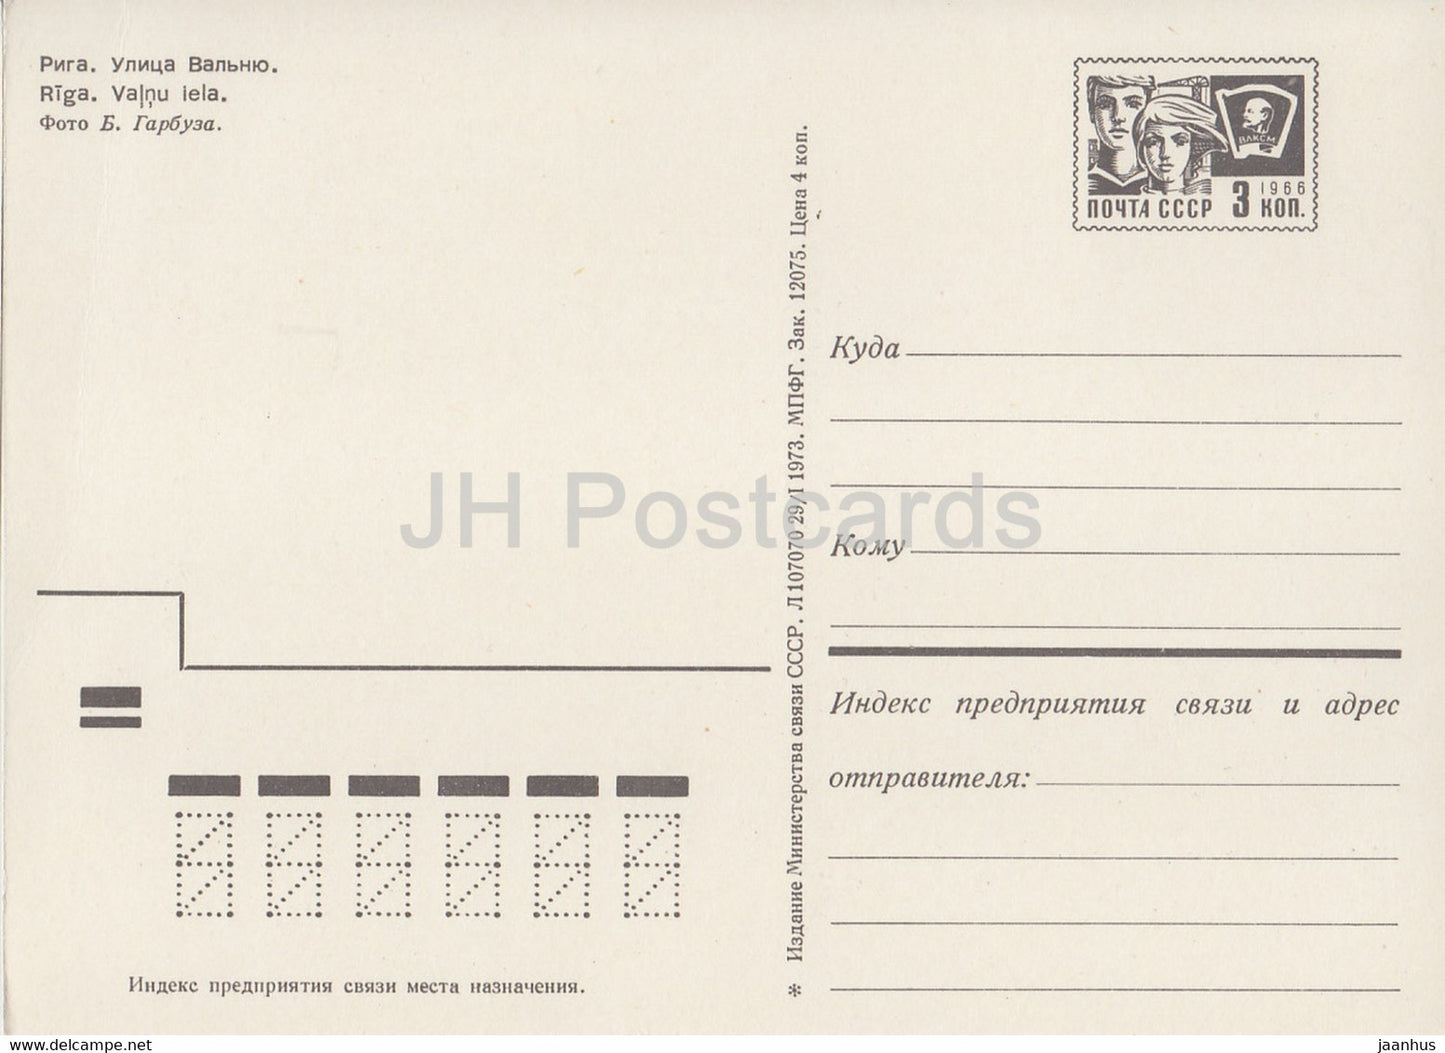 Sigulda - Valnu street - car Moskvich - postal stationery - 1973 - Latvia USSR - unused